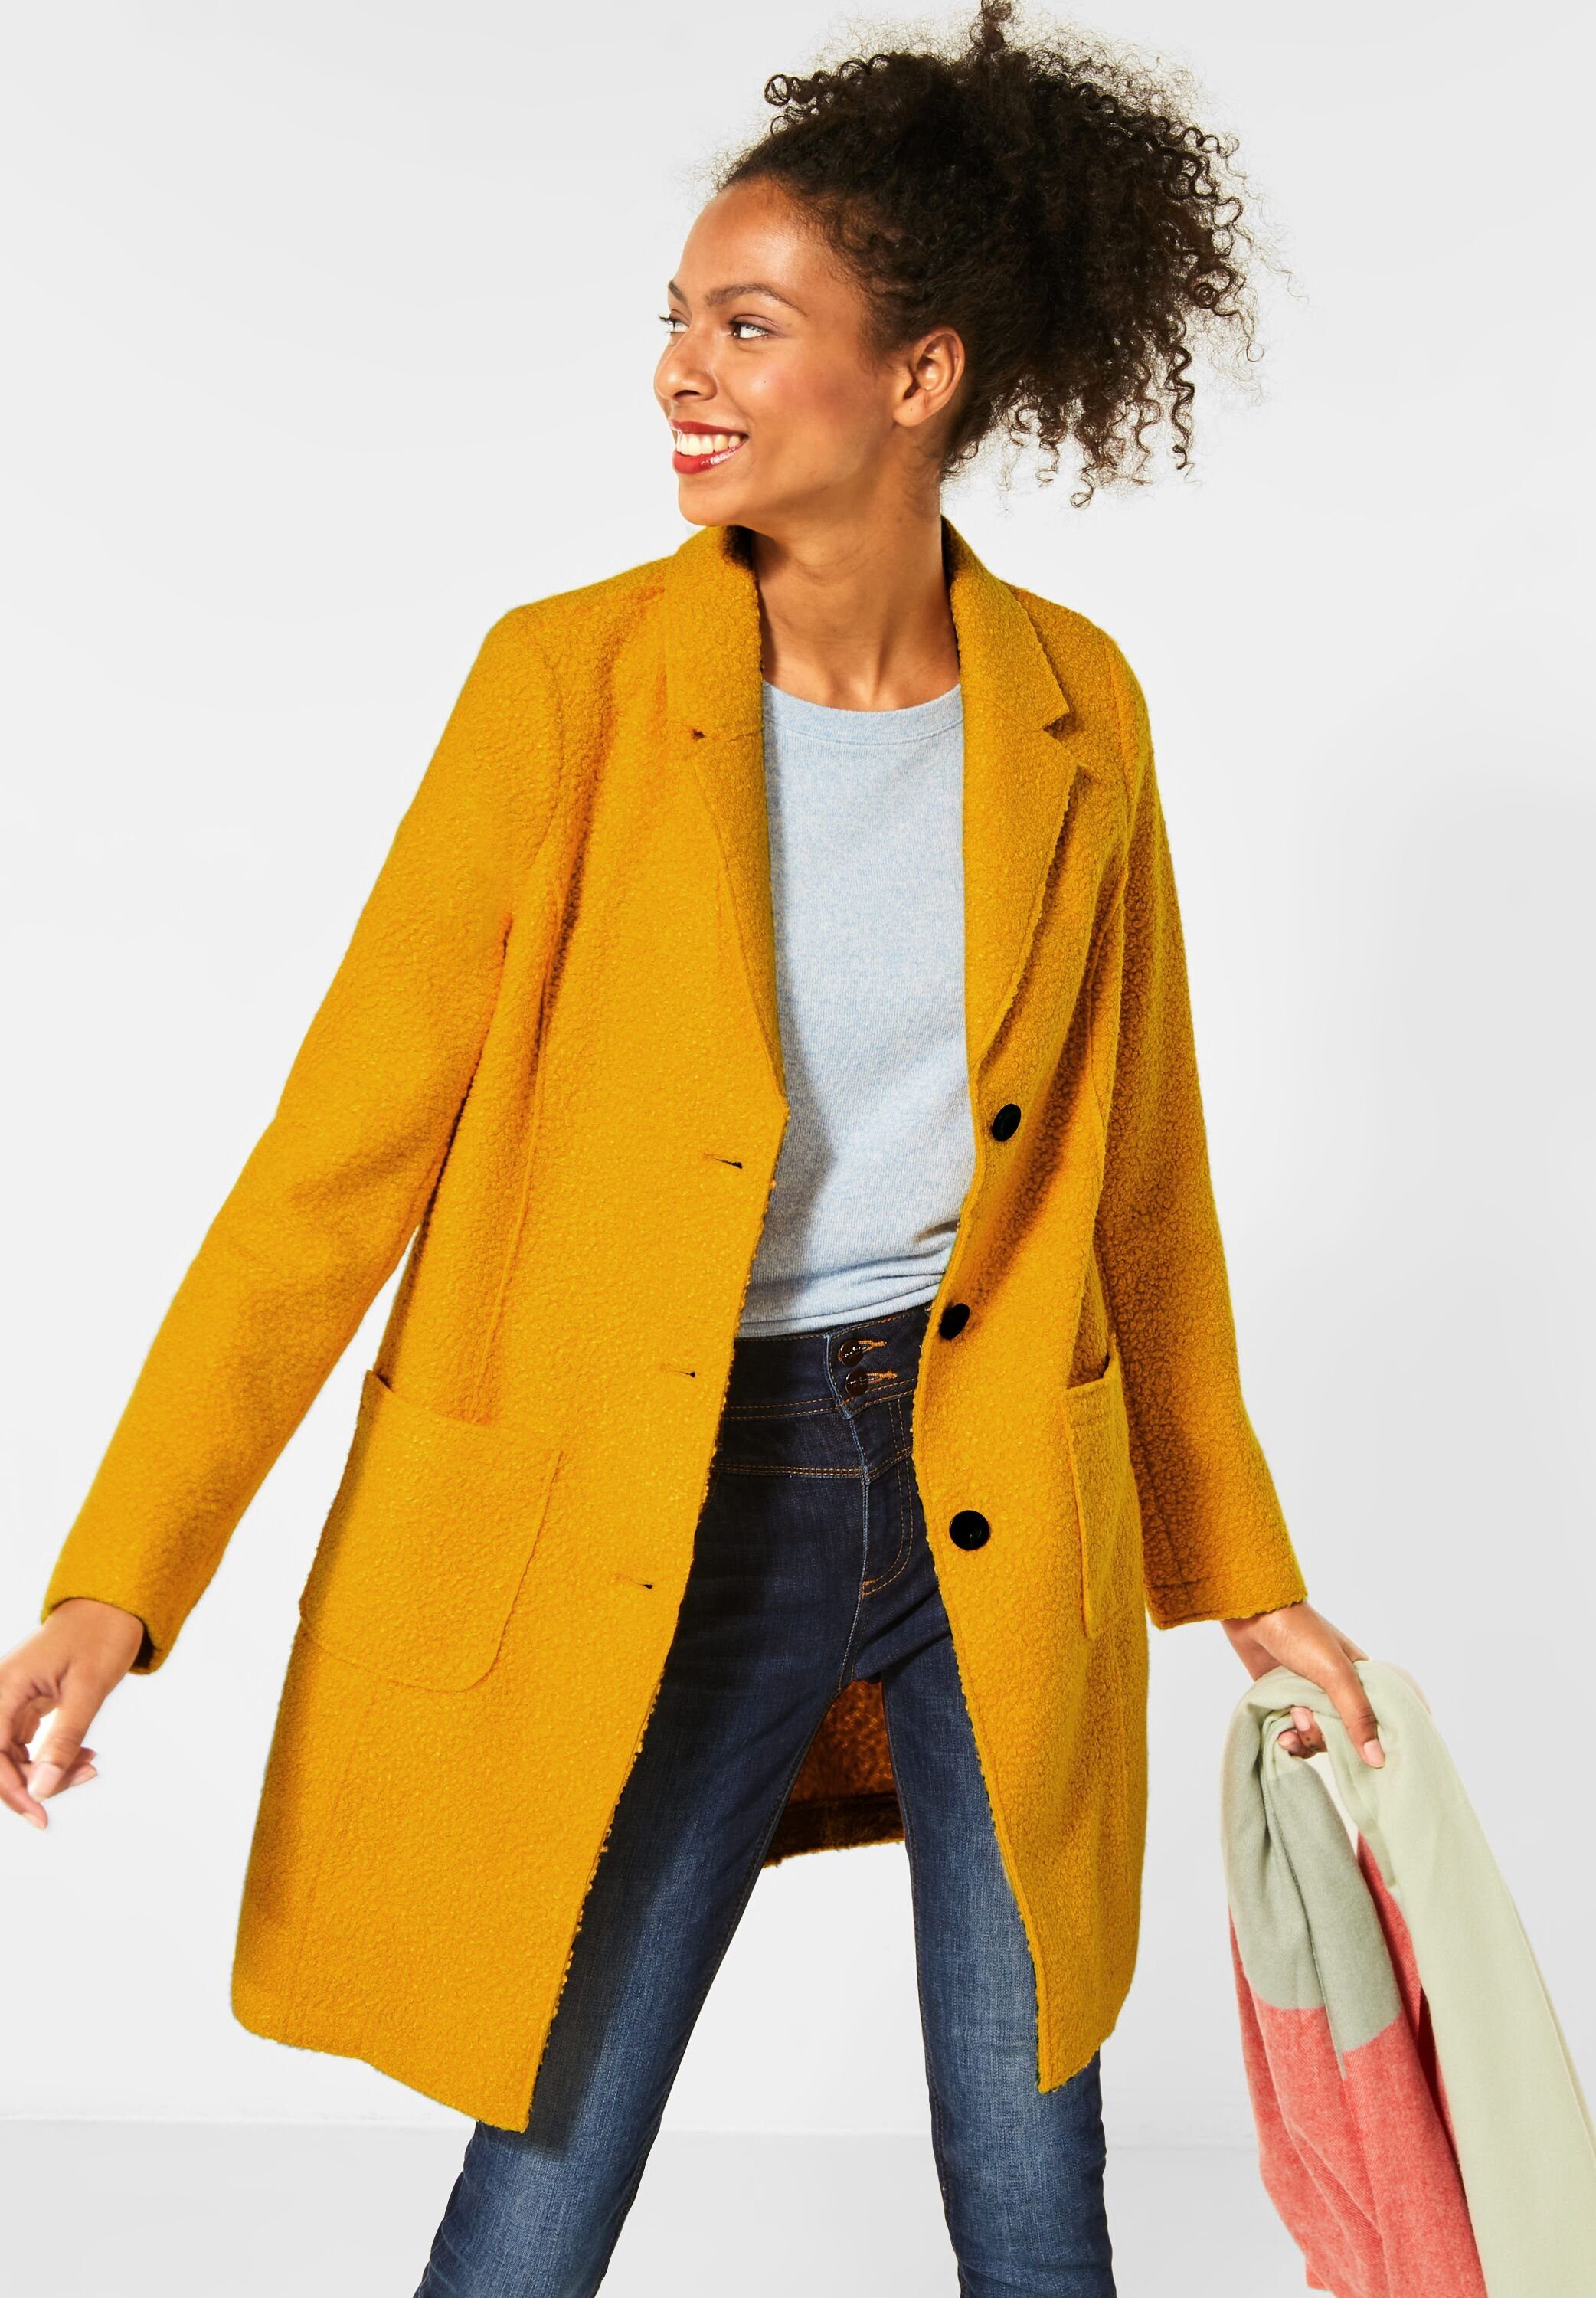 Mantel in gelb online kaufen | OTTO